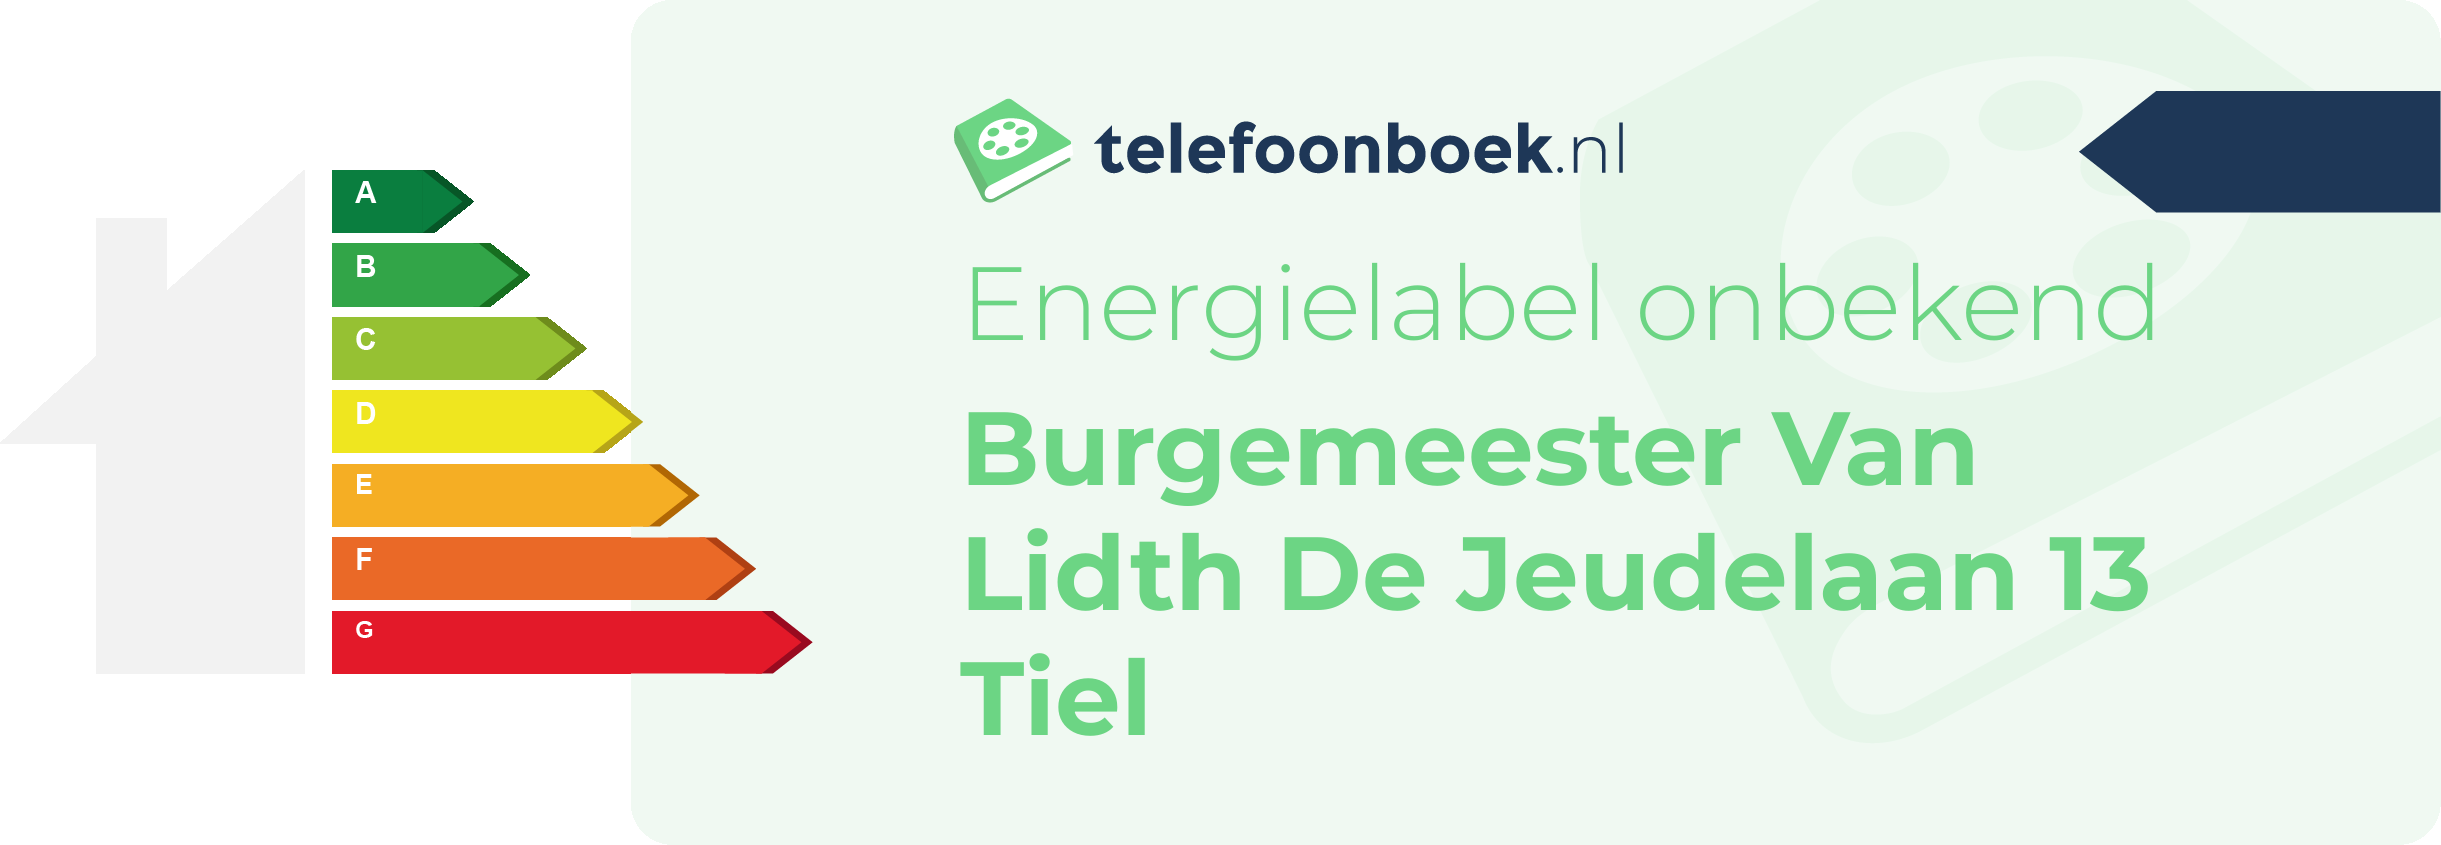 Energielabel Burgemeester Van Lidth De Jeudelaan 13 Tiel